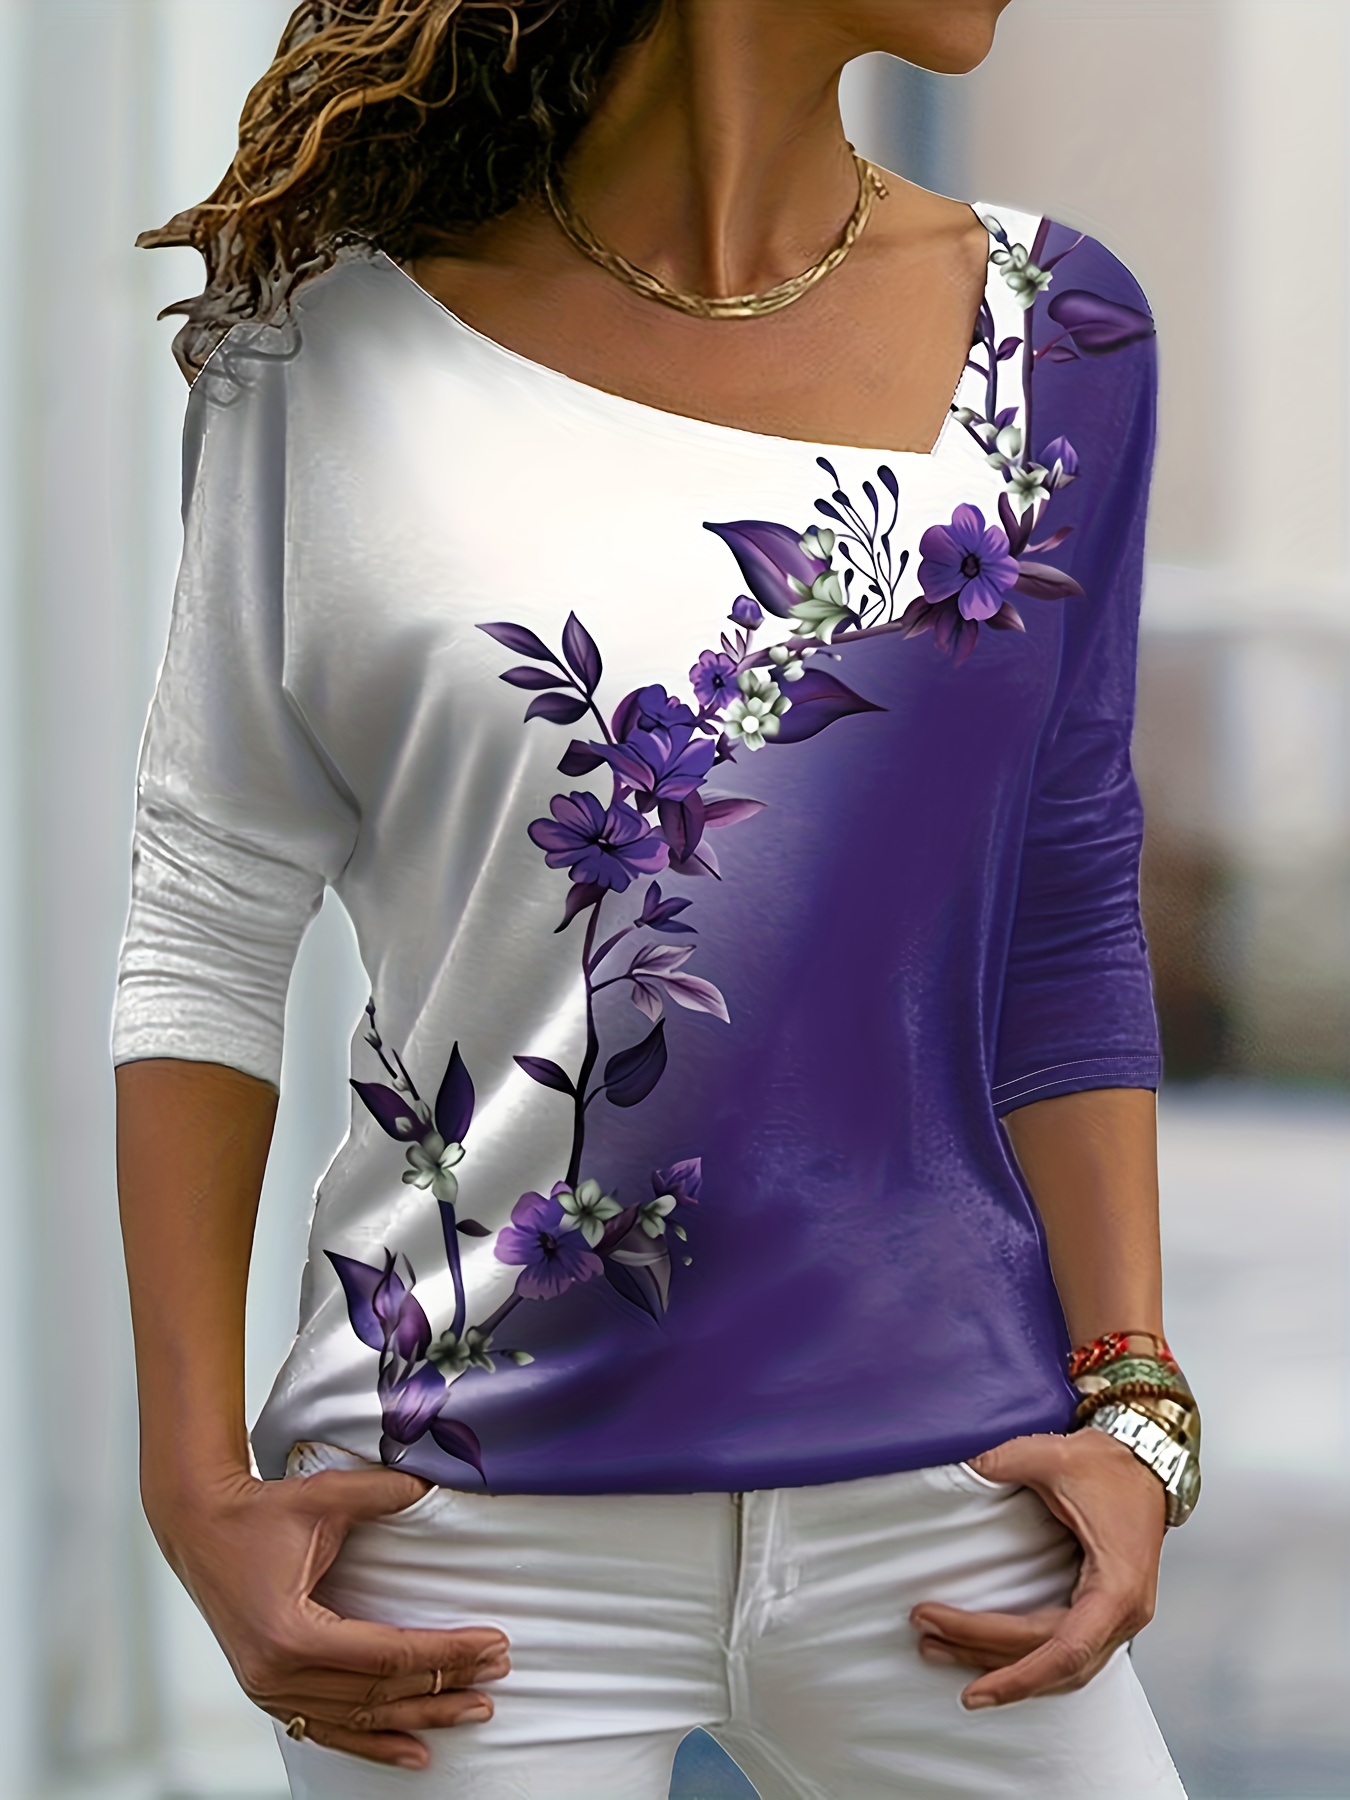 Louis Vuitton Purple Women Casual Shirt - Express your unique